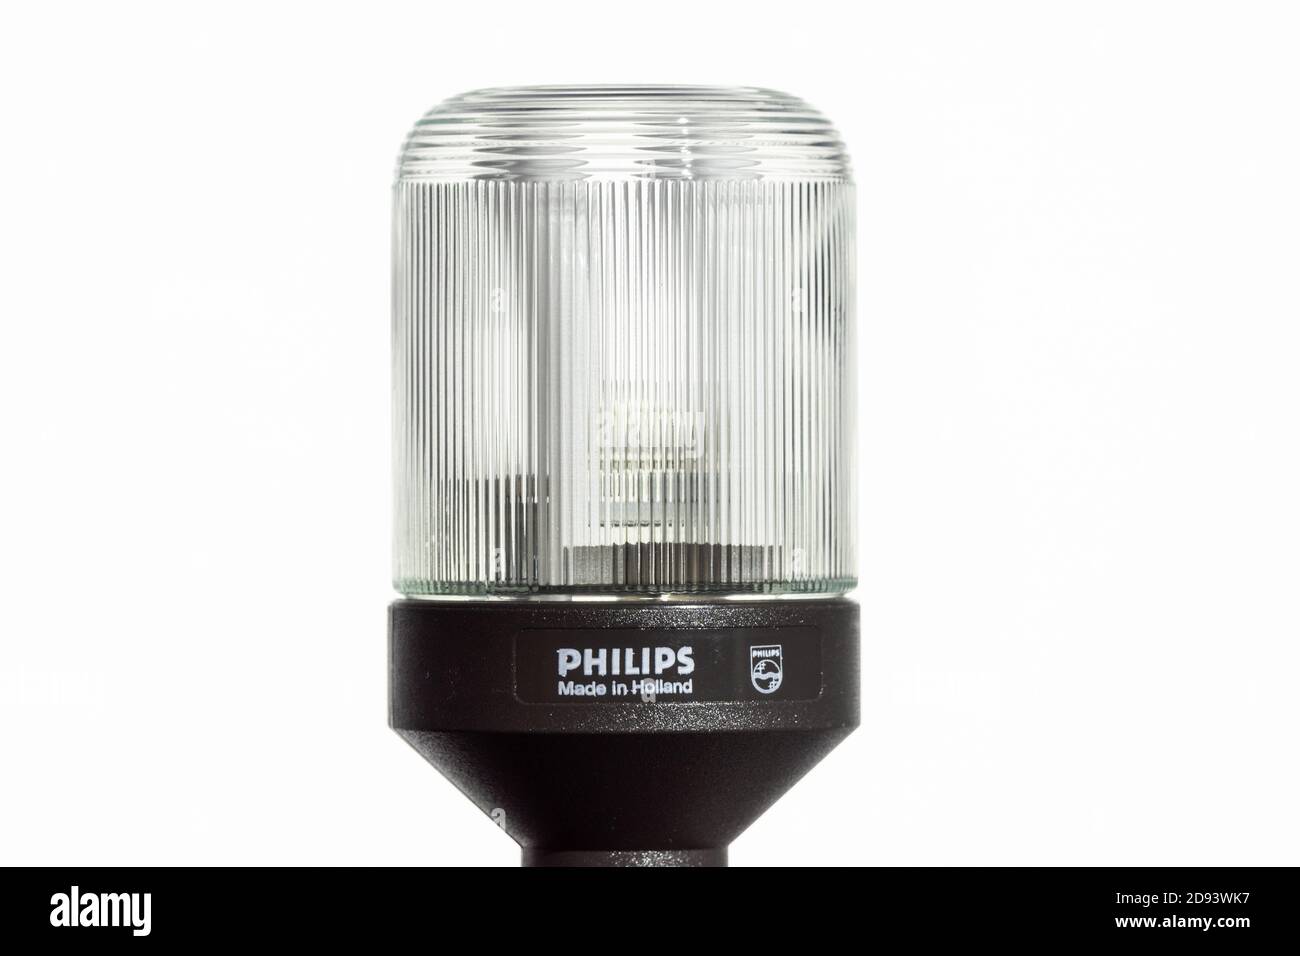 Philips SL*9 CFL con base negra, un raro ejemplo temprano de CFL original o diseño de ahorro de energía que data de principios de 1980, las lámparas posteriores tenían una base blanca Foto de stock